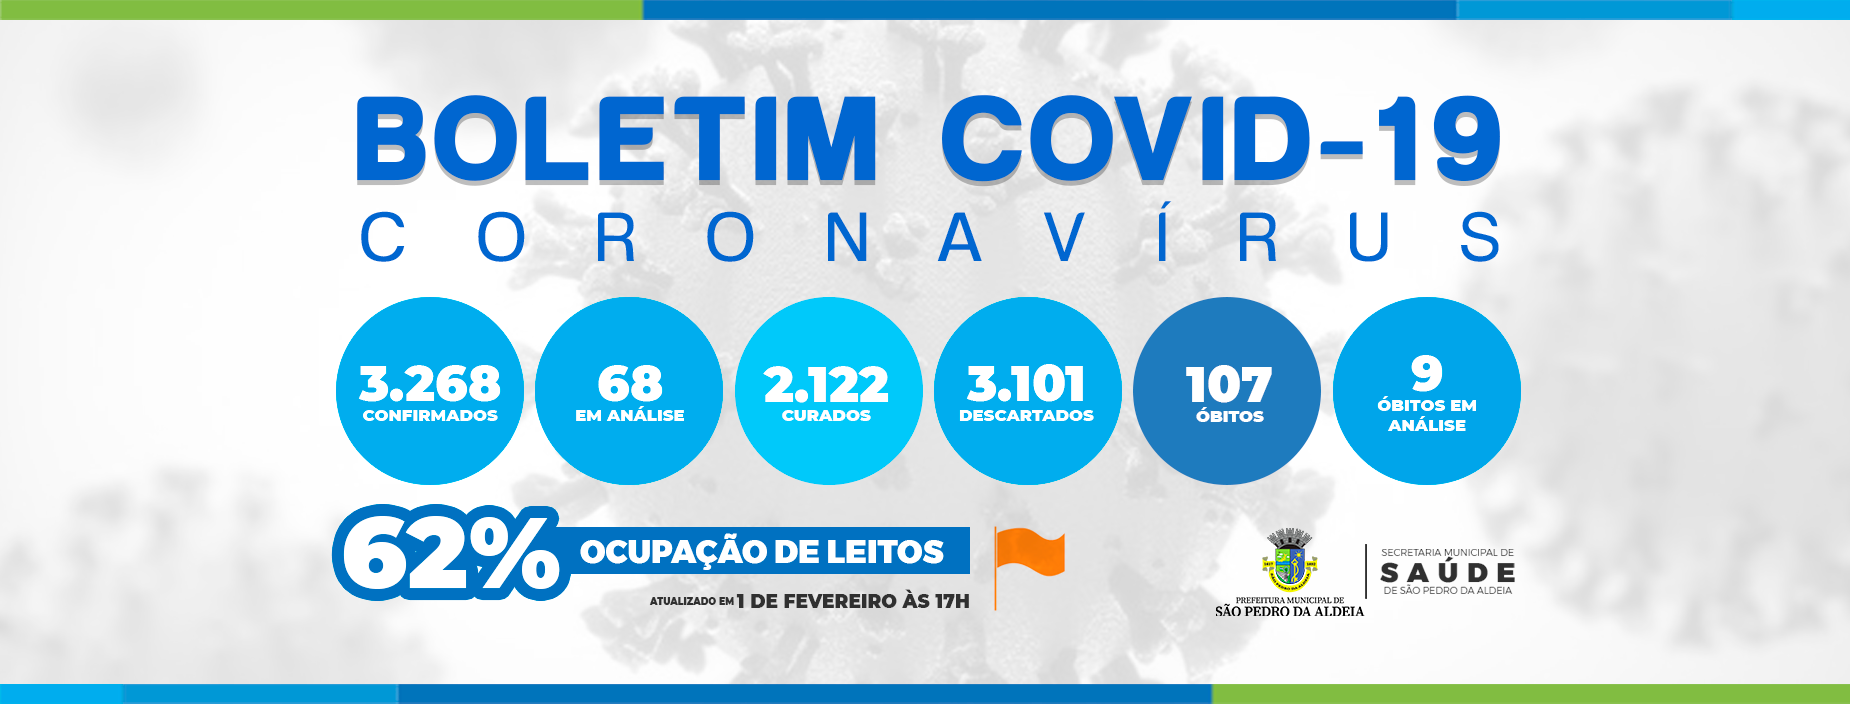 Secretaria de Saúde de São Pedro da Aldeia informa números da Covid-19 no município